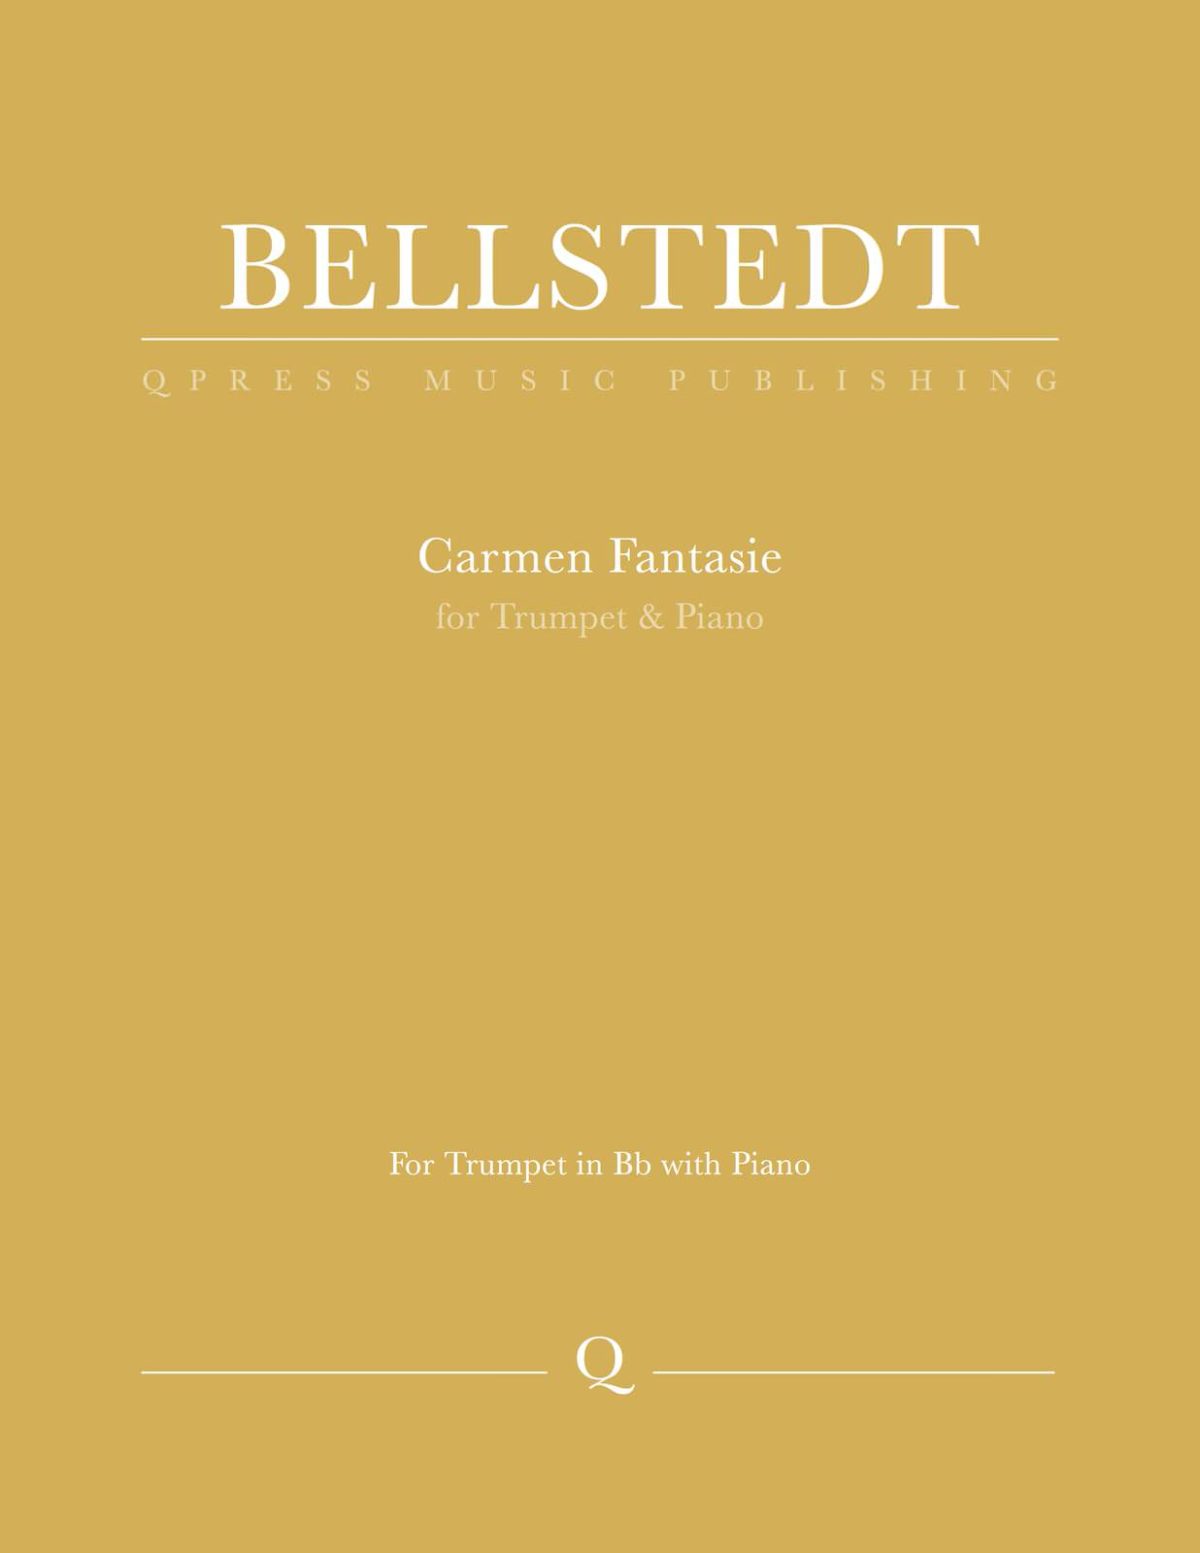 Bellstedt, Carmen Fantasie-p01